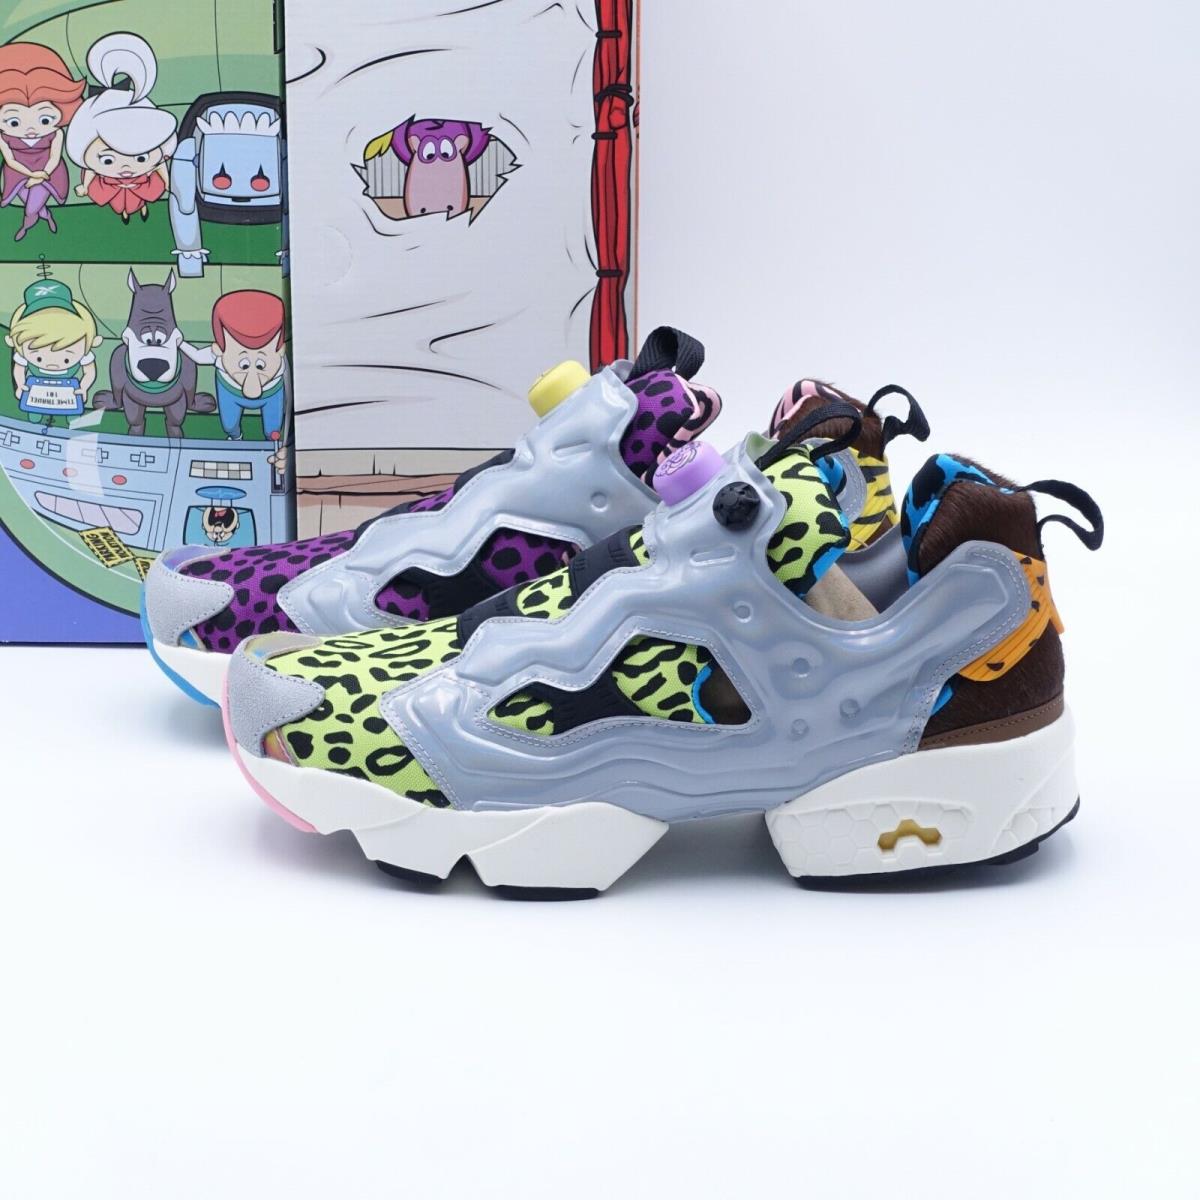 Size 11 Men`s Reebok Instapump Fury 94 Jetsons x Flintstones Basketball Shoes